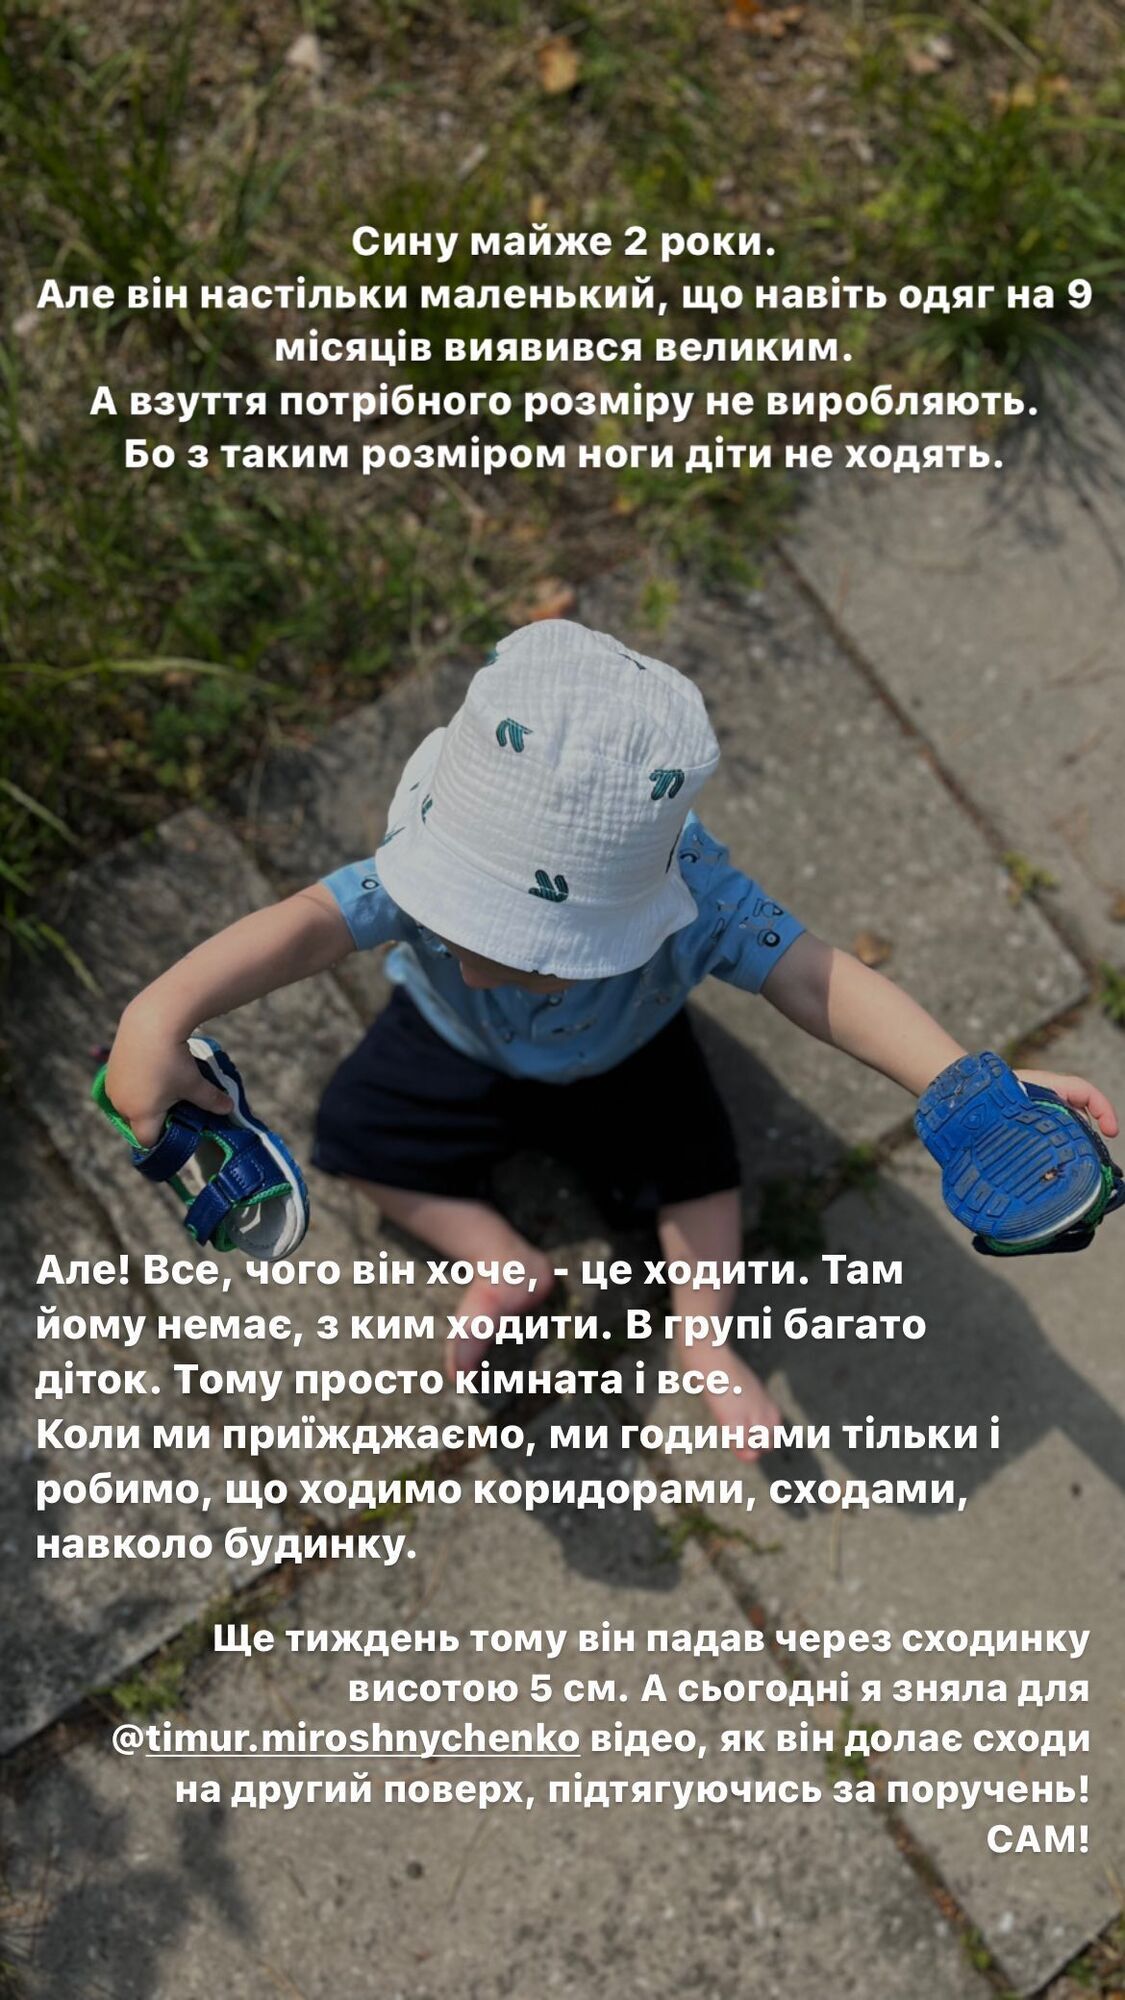 Жена Мирошниченко показала мальчика из детдома, усыновлением которого они занимаются: все, чего он хочет, — ходить